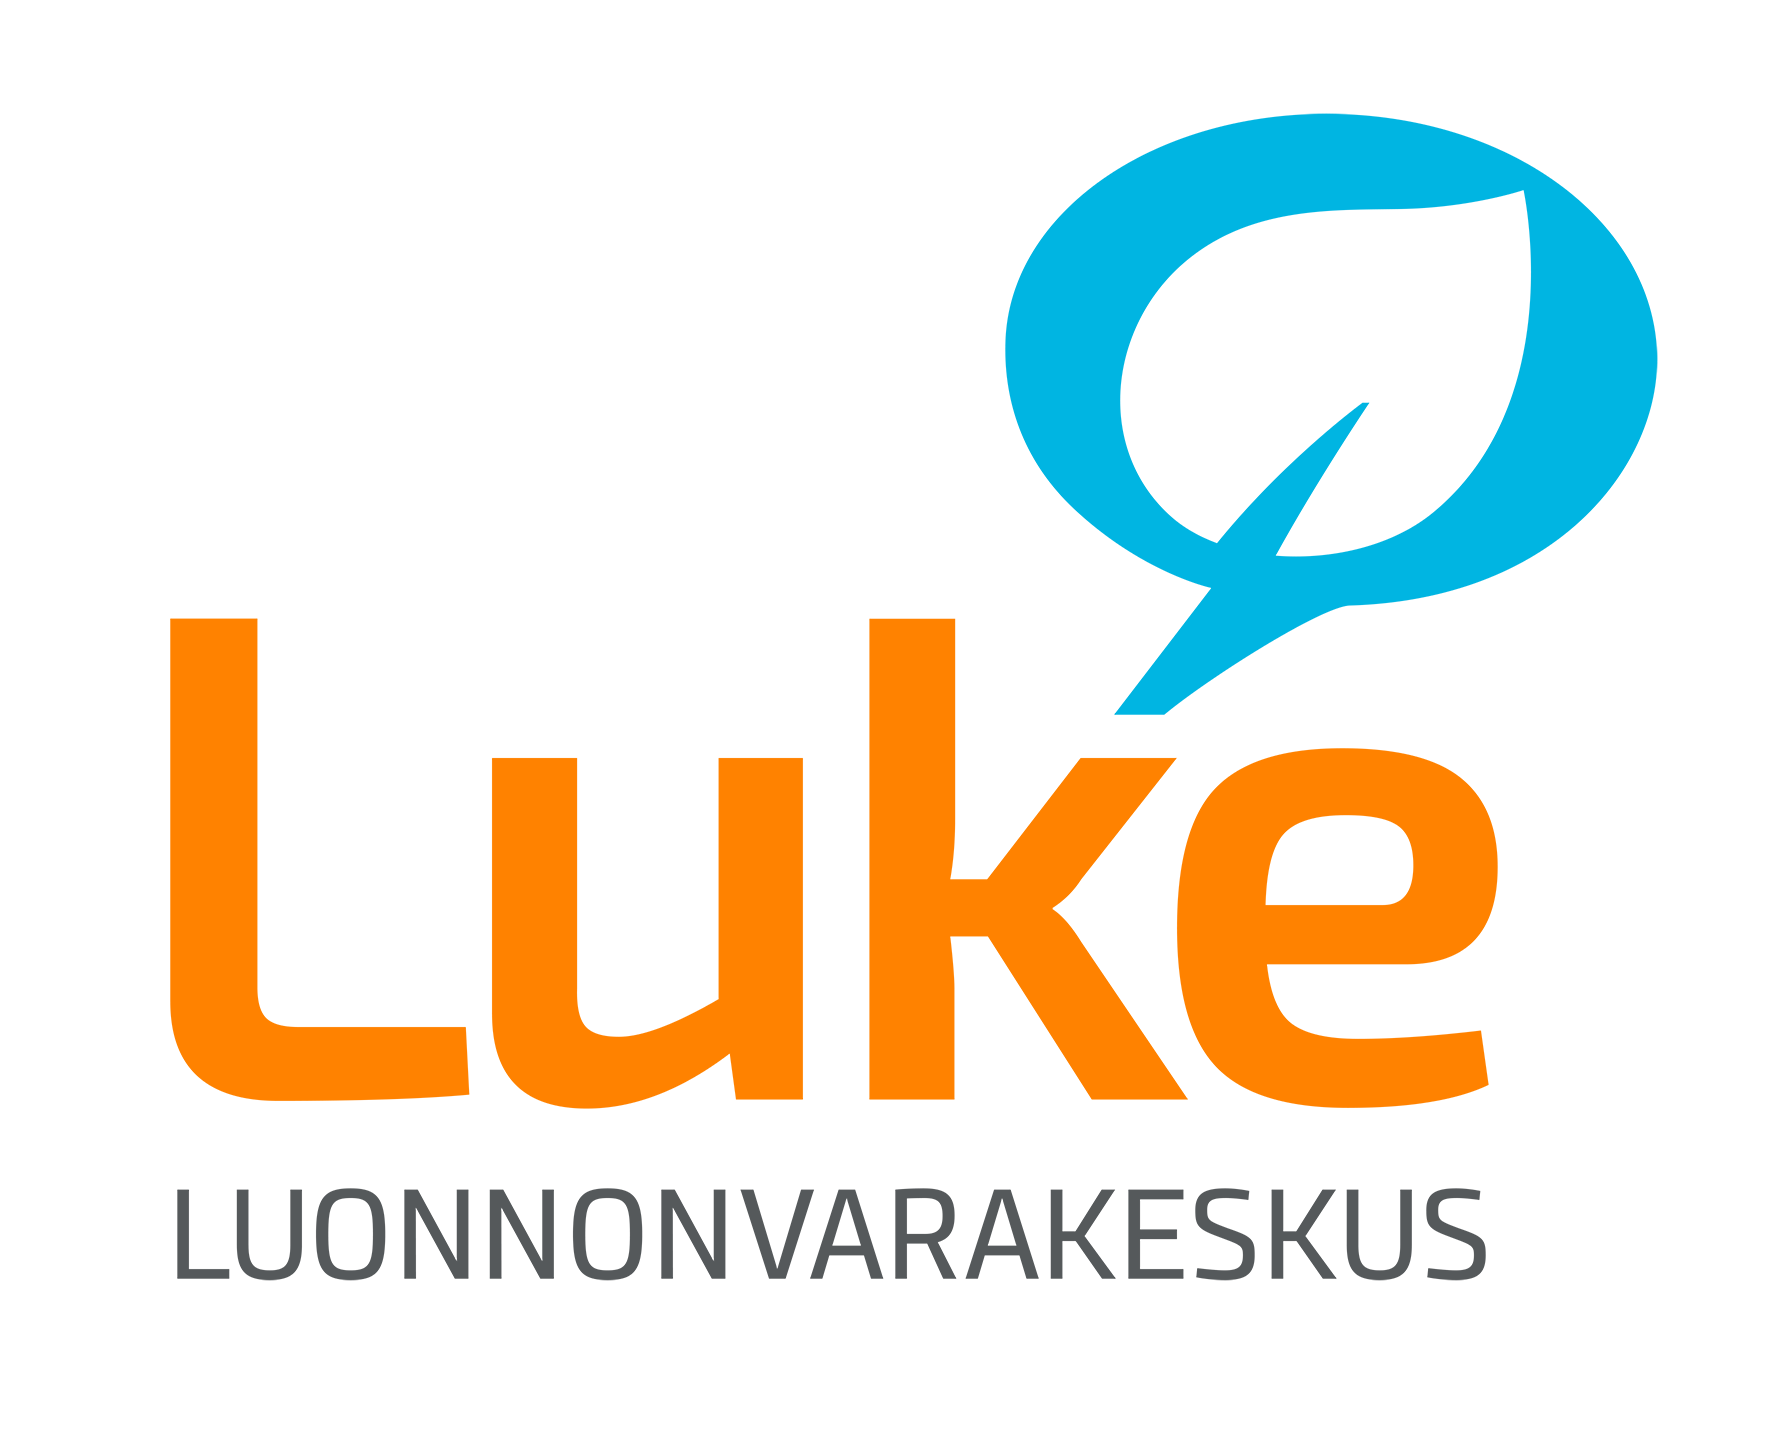 luken-logo-office-kayttoon-suomeksi-002.png (99 KB)